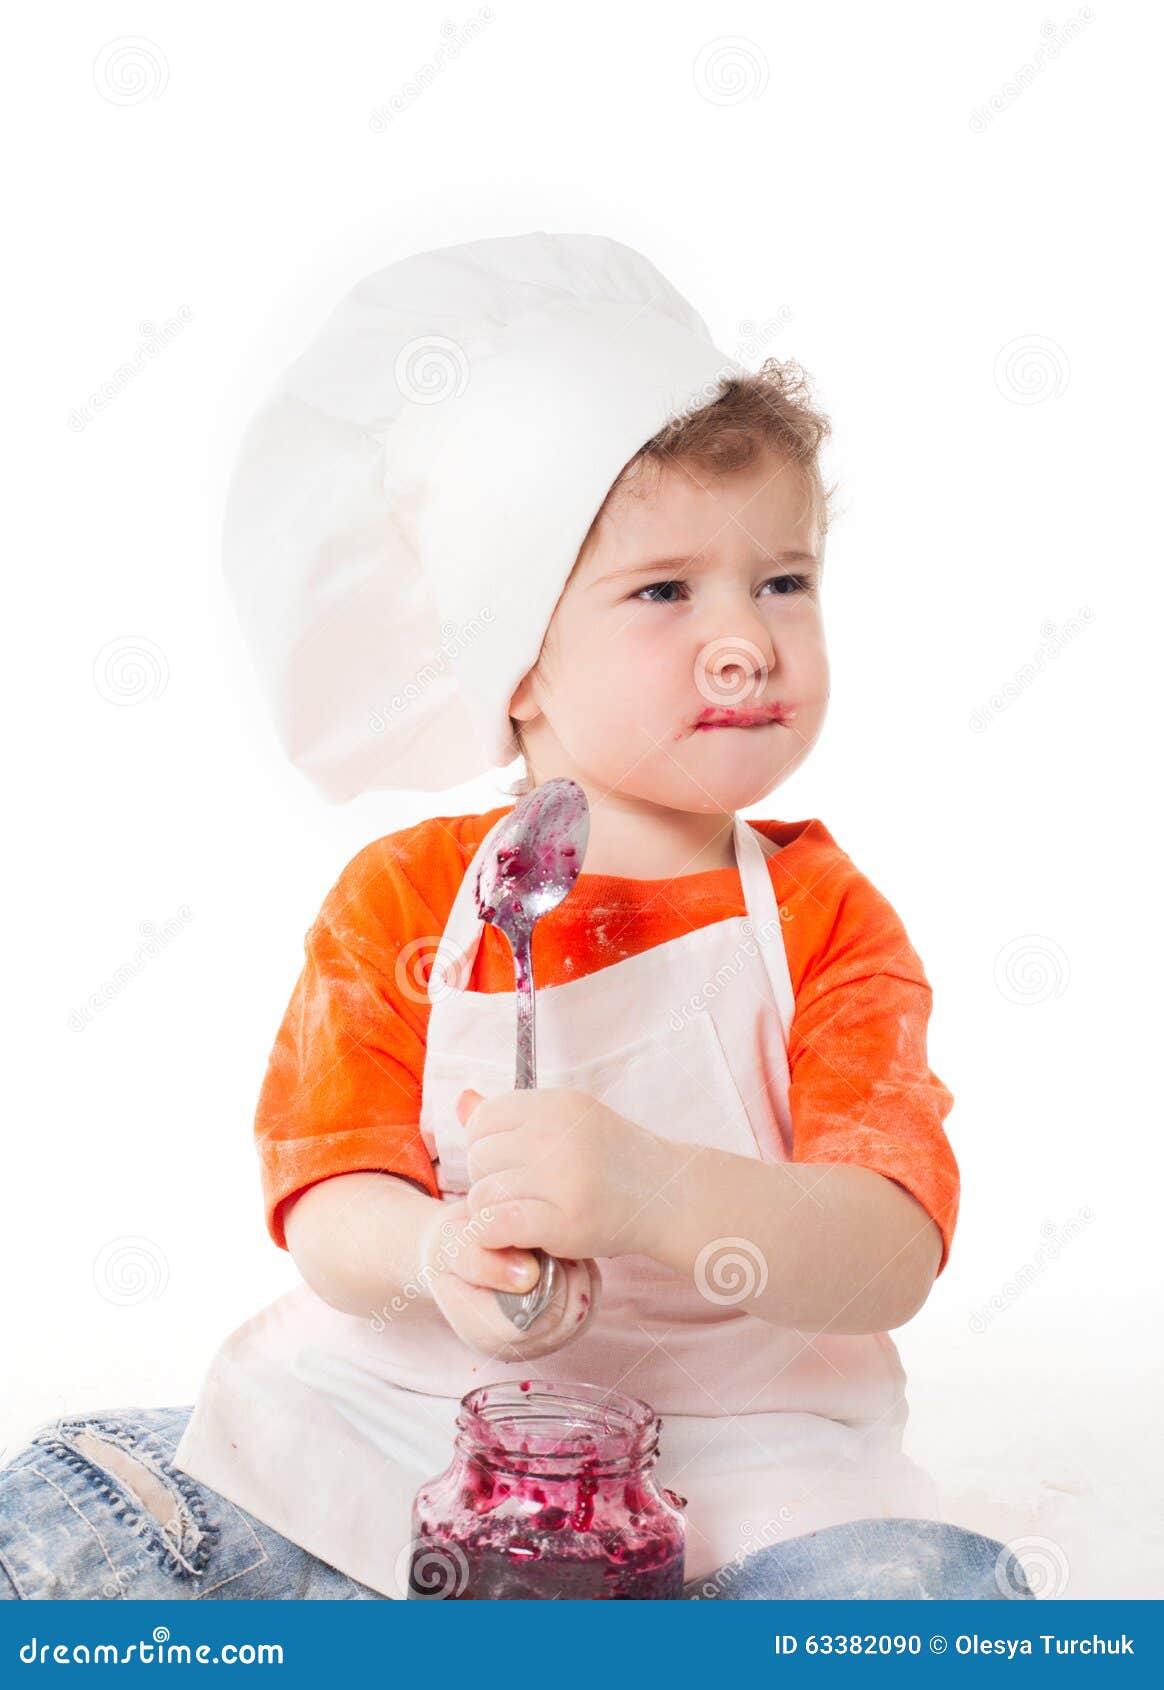 Baby Chef Eating Jam Isolated on White Background Stock Photo - Image ...